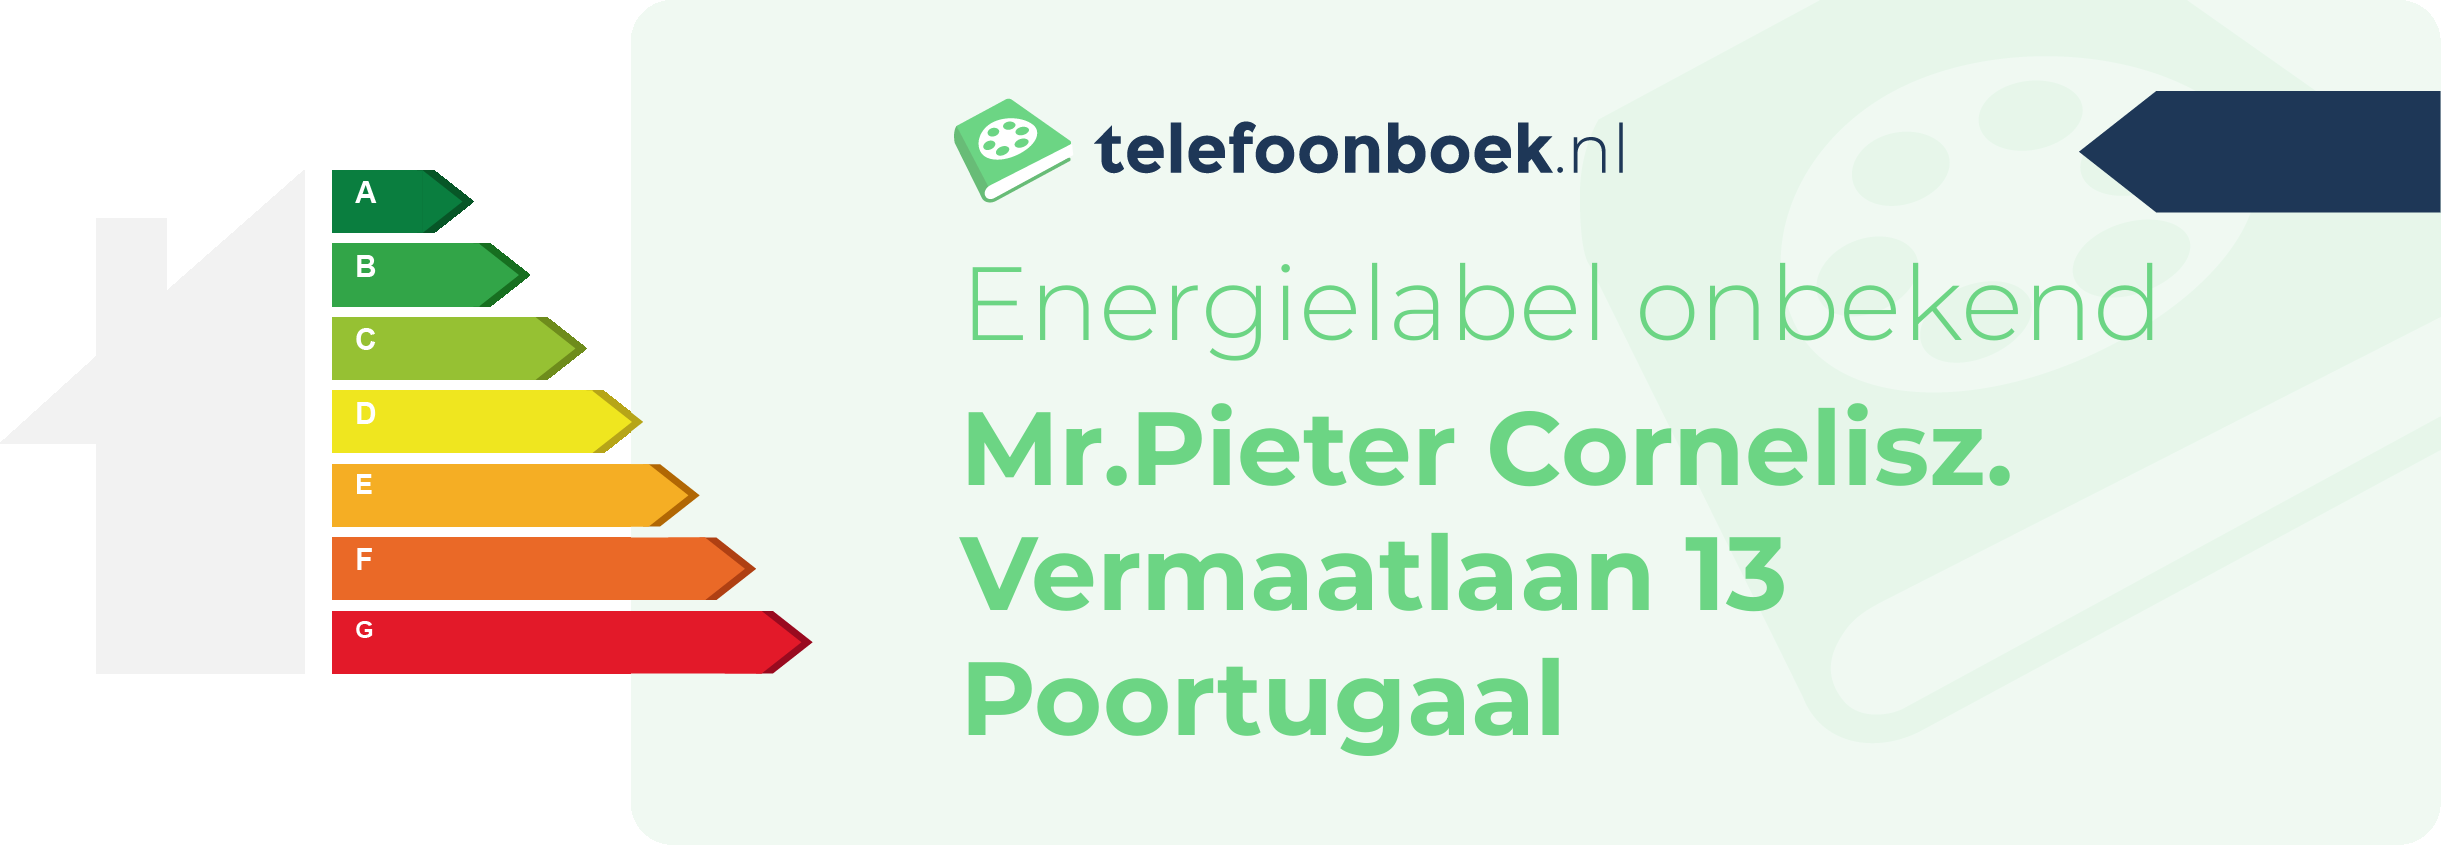 Energielabel Mr.Pieter Cornelisz. Vermaatlaan 13 Poortugaal